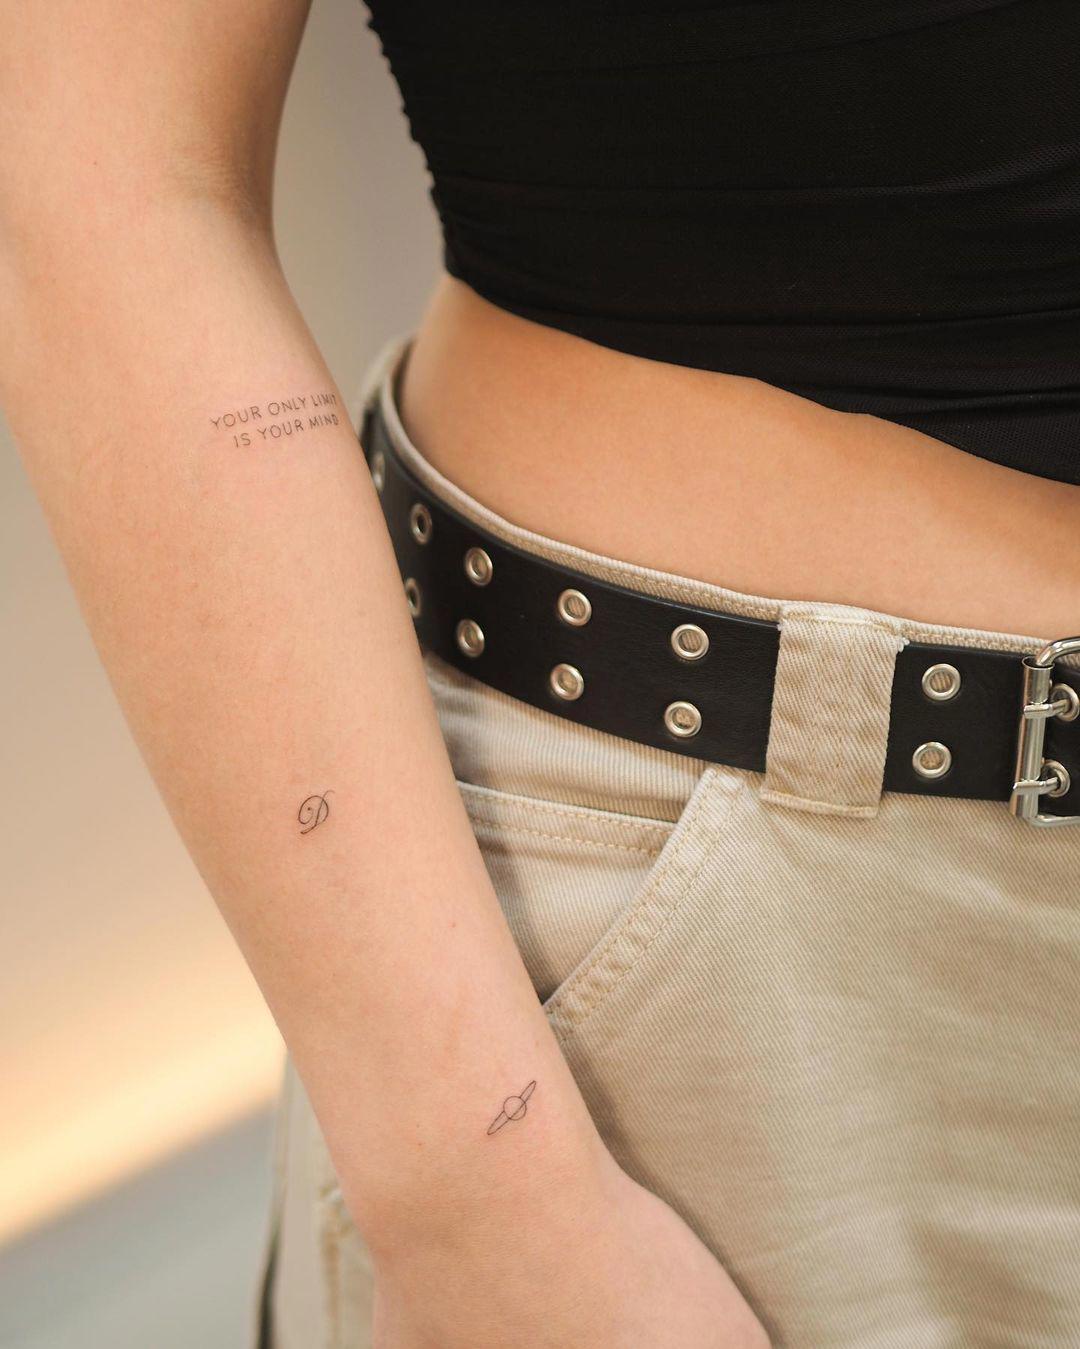 Combinación de tattoos pequeños en el antebrazo